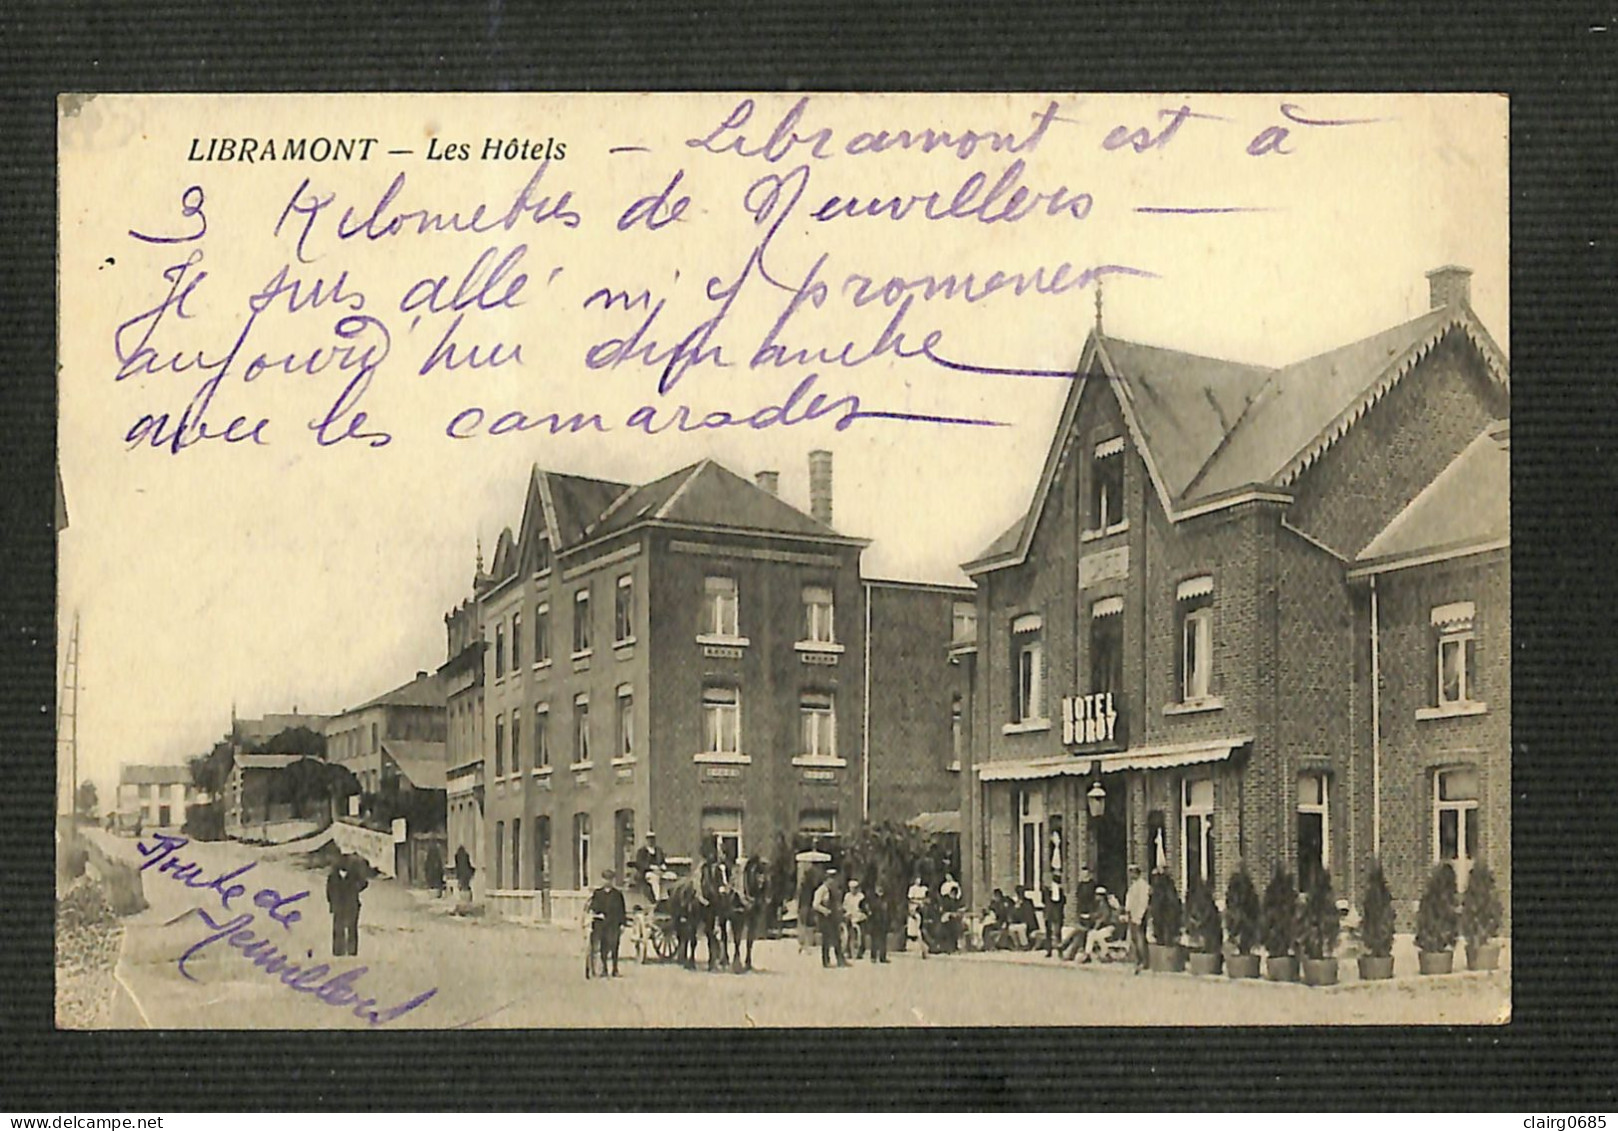 LUXEMBOURG - LIBRAMONT - Les Hôtels - Libramont-Chevigny